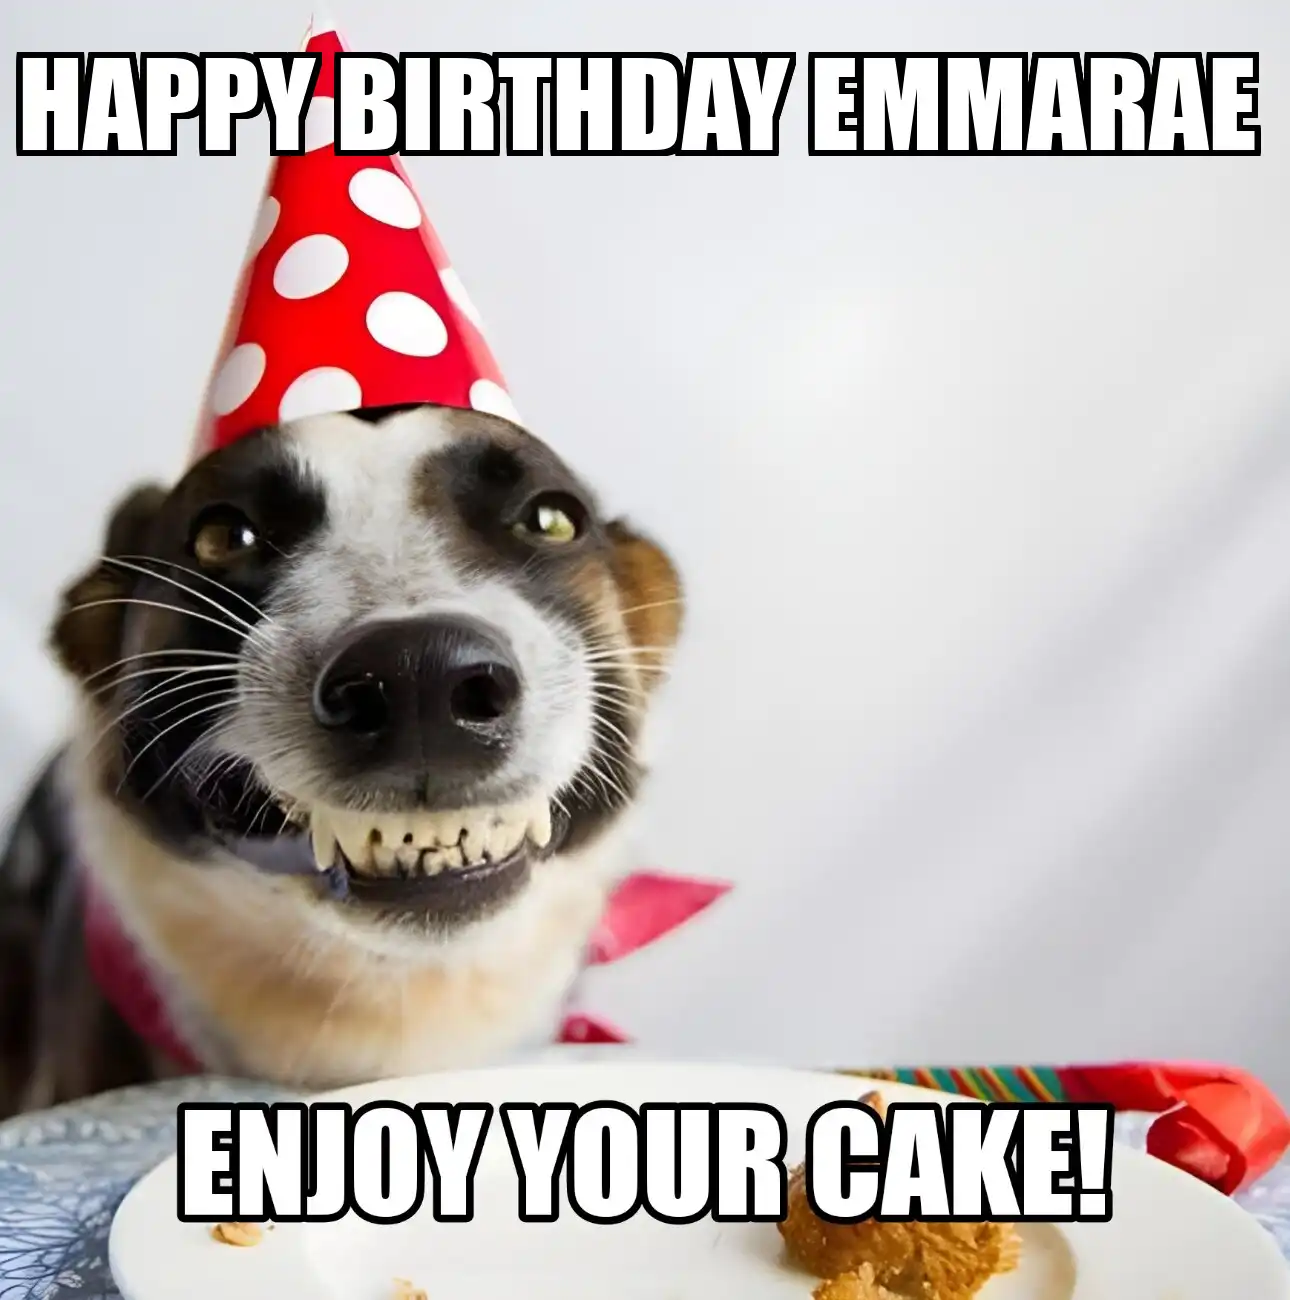 Happy Birthday Emmarae Enjoy Your Cake Dog Meme